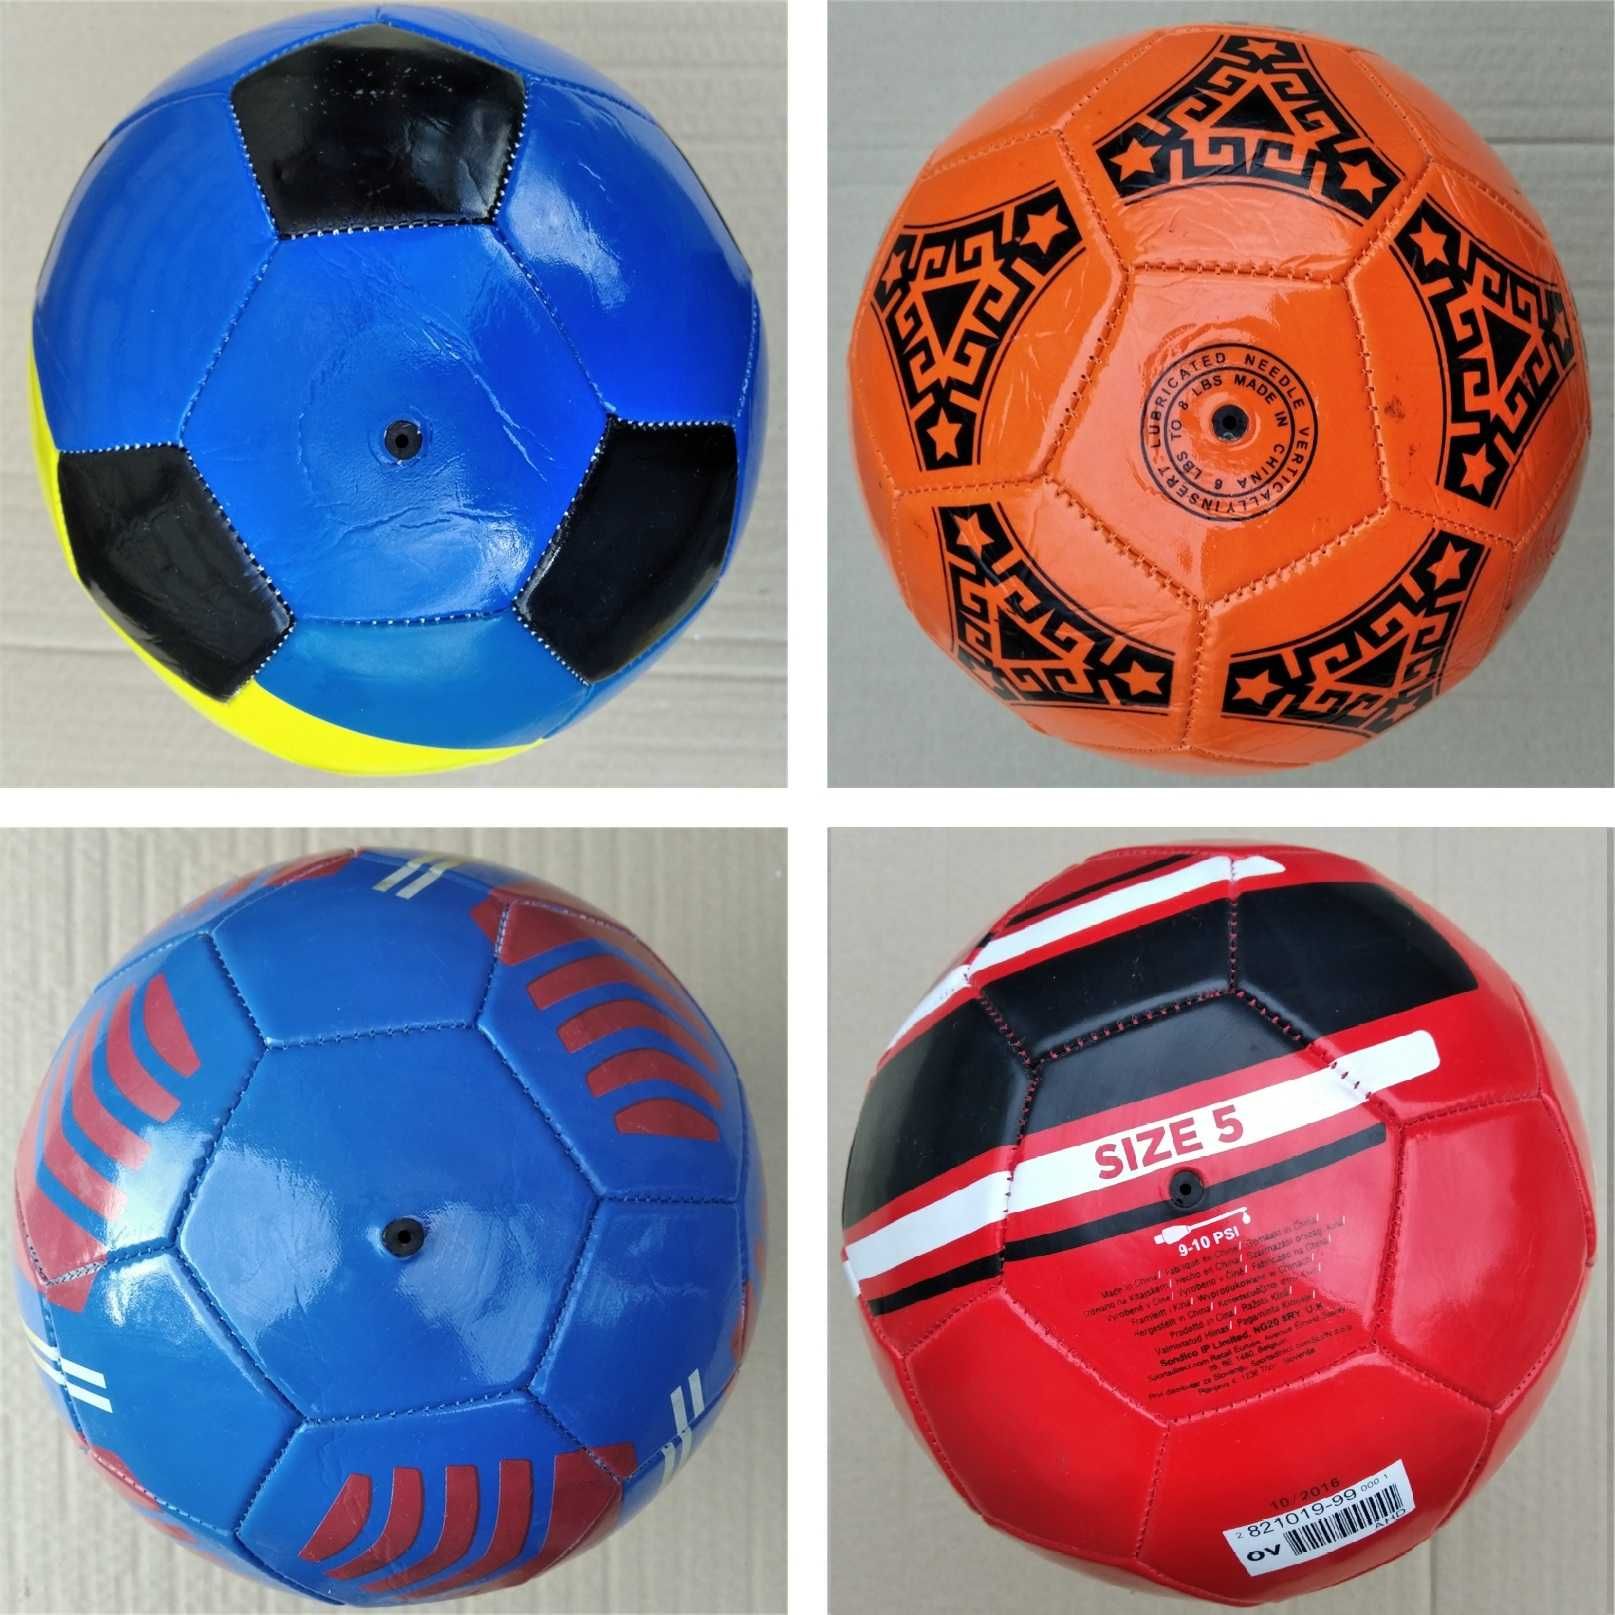 Футбольний мяч розмір 4 і 5; різні, нові, якість Китай  160грн, 200грн